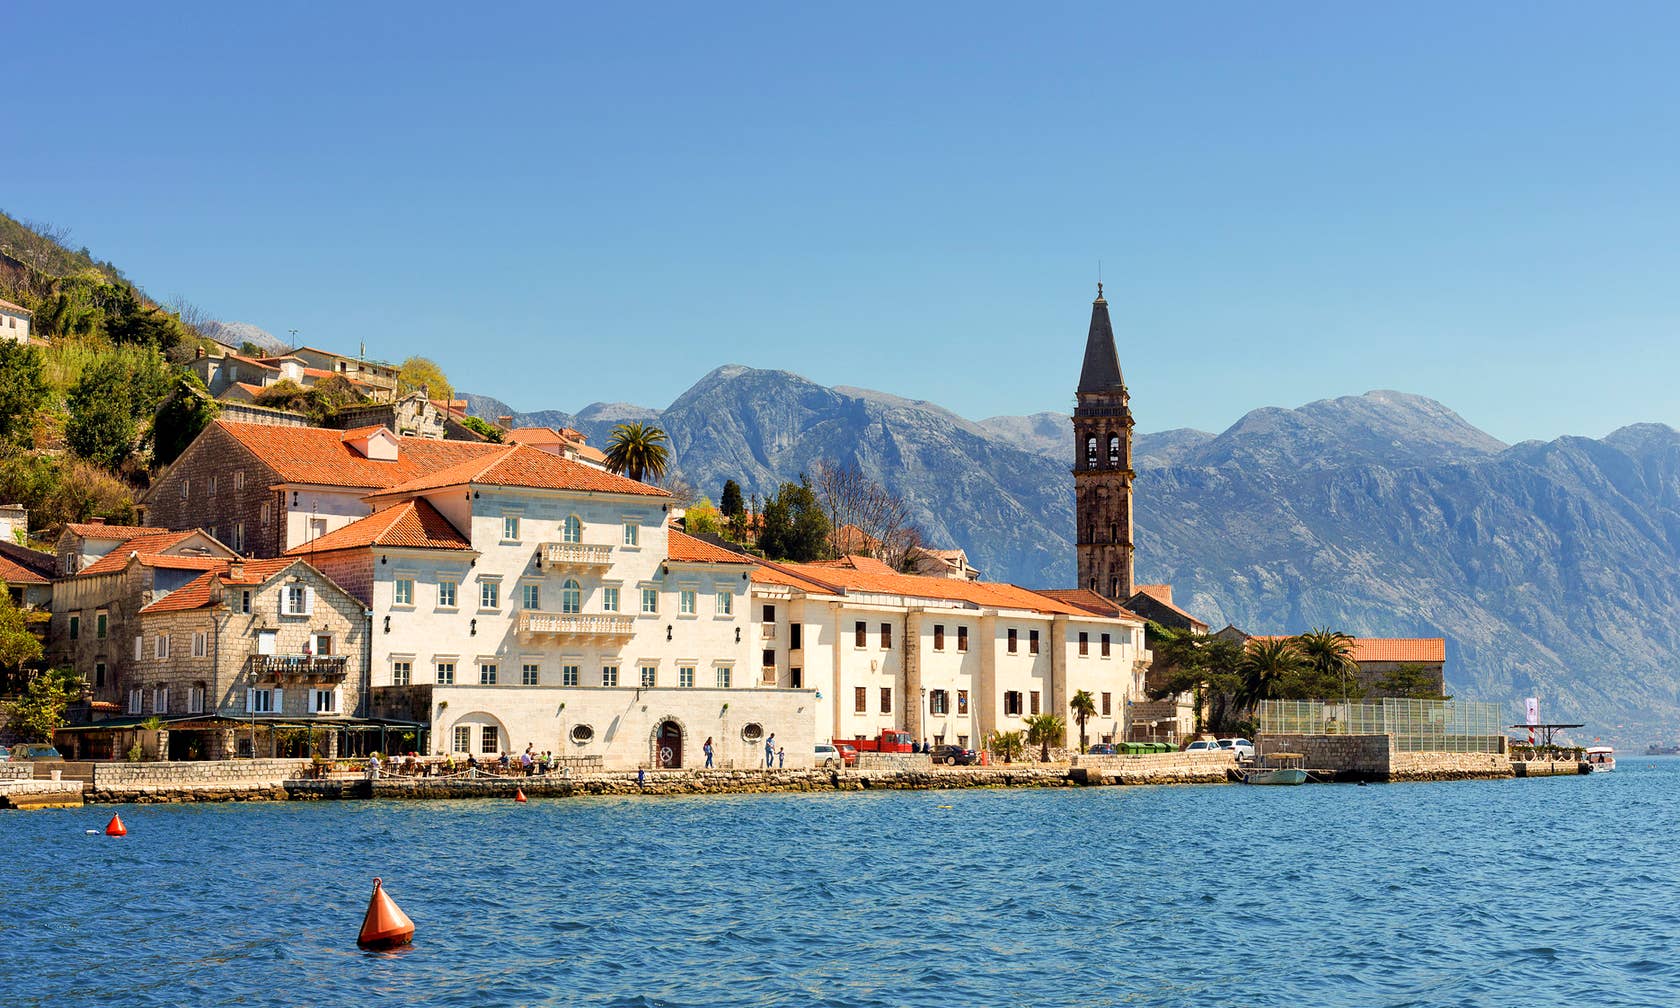 Affitti per le vacanze a Montenegro